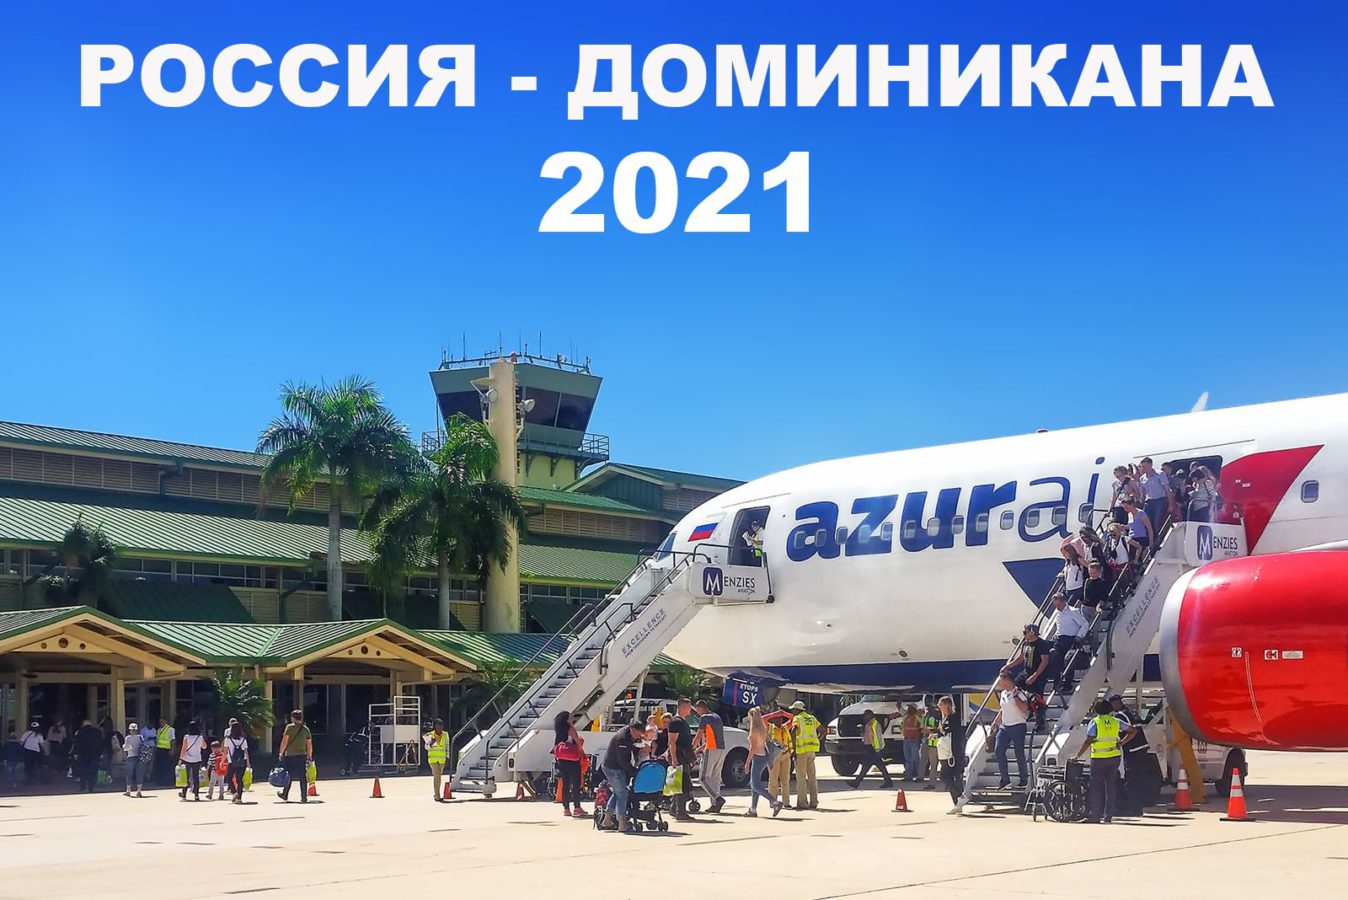 Самолёт из России в Доминикане в аэропорту 2021 год